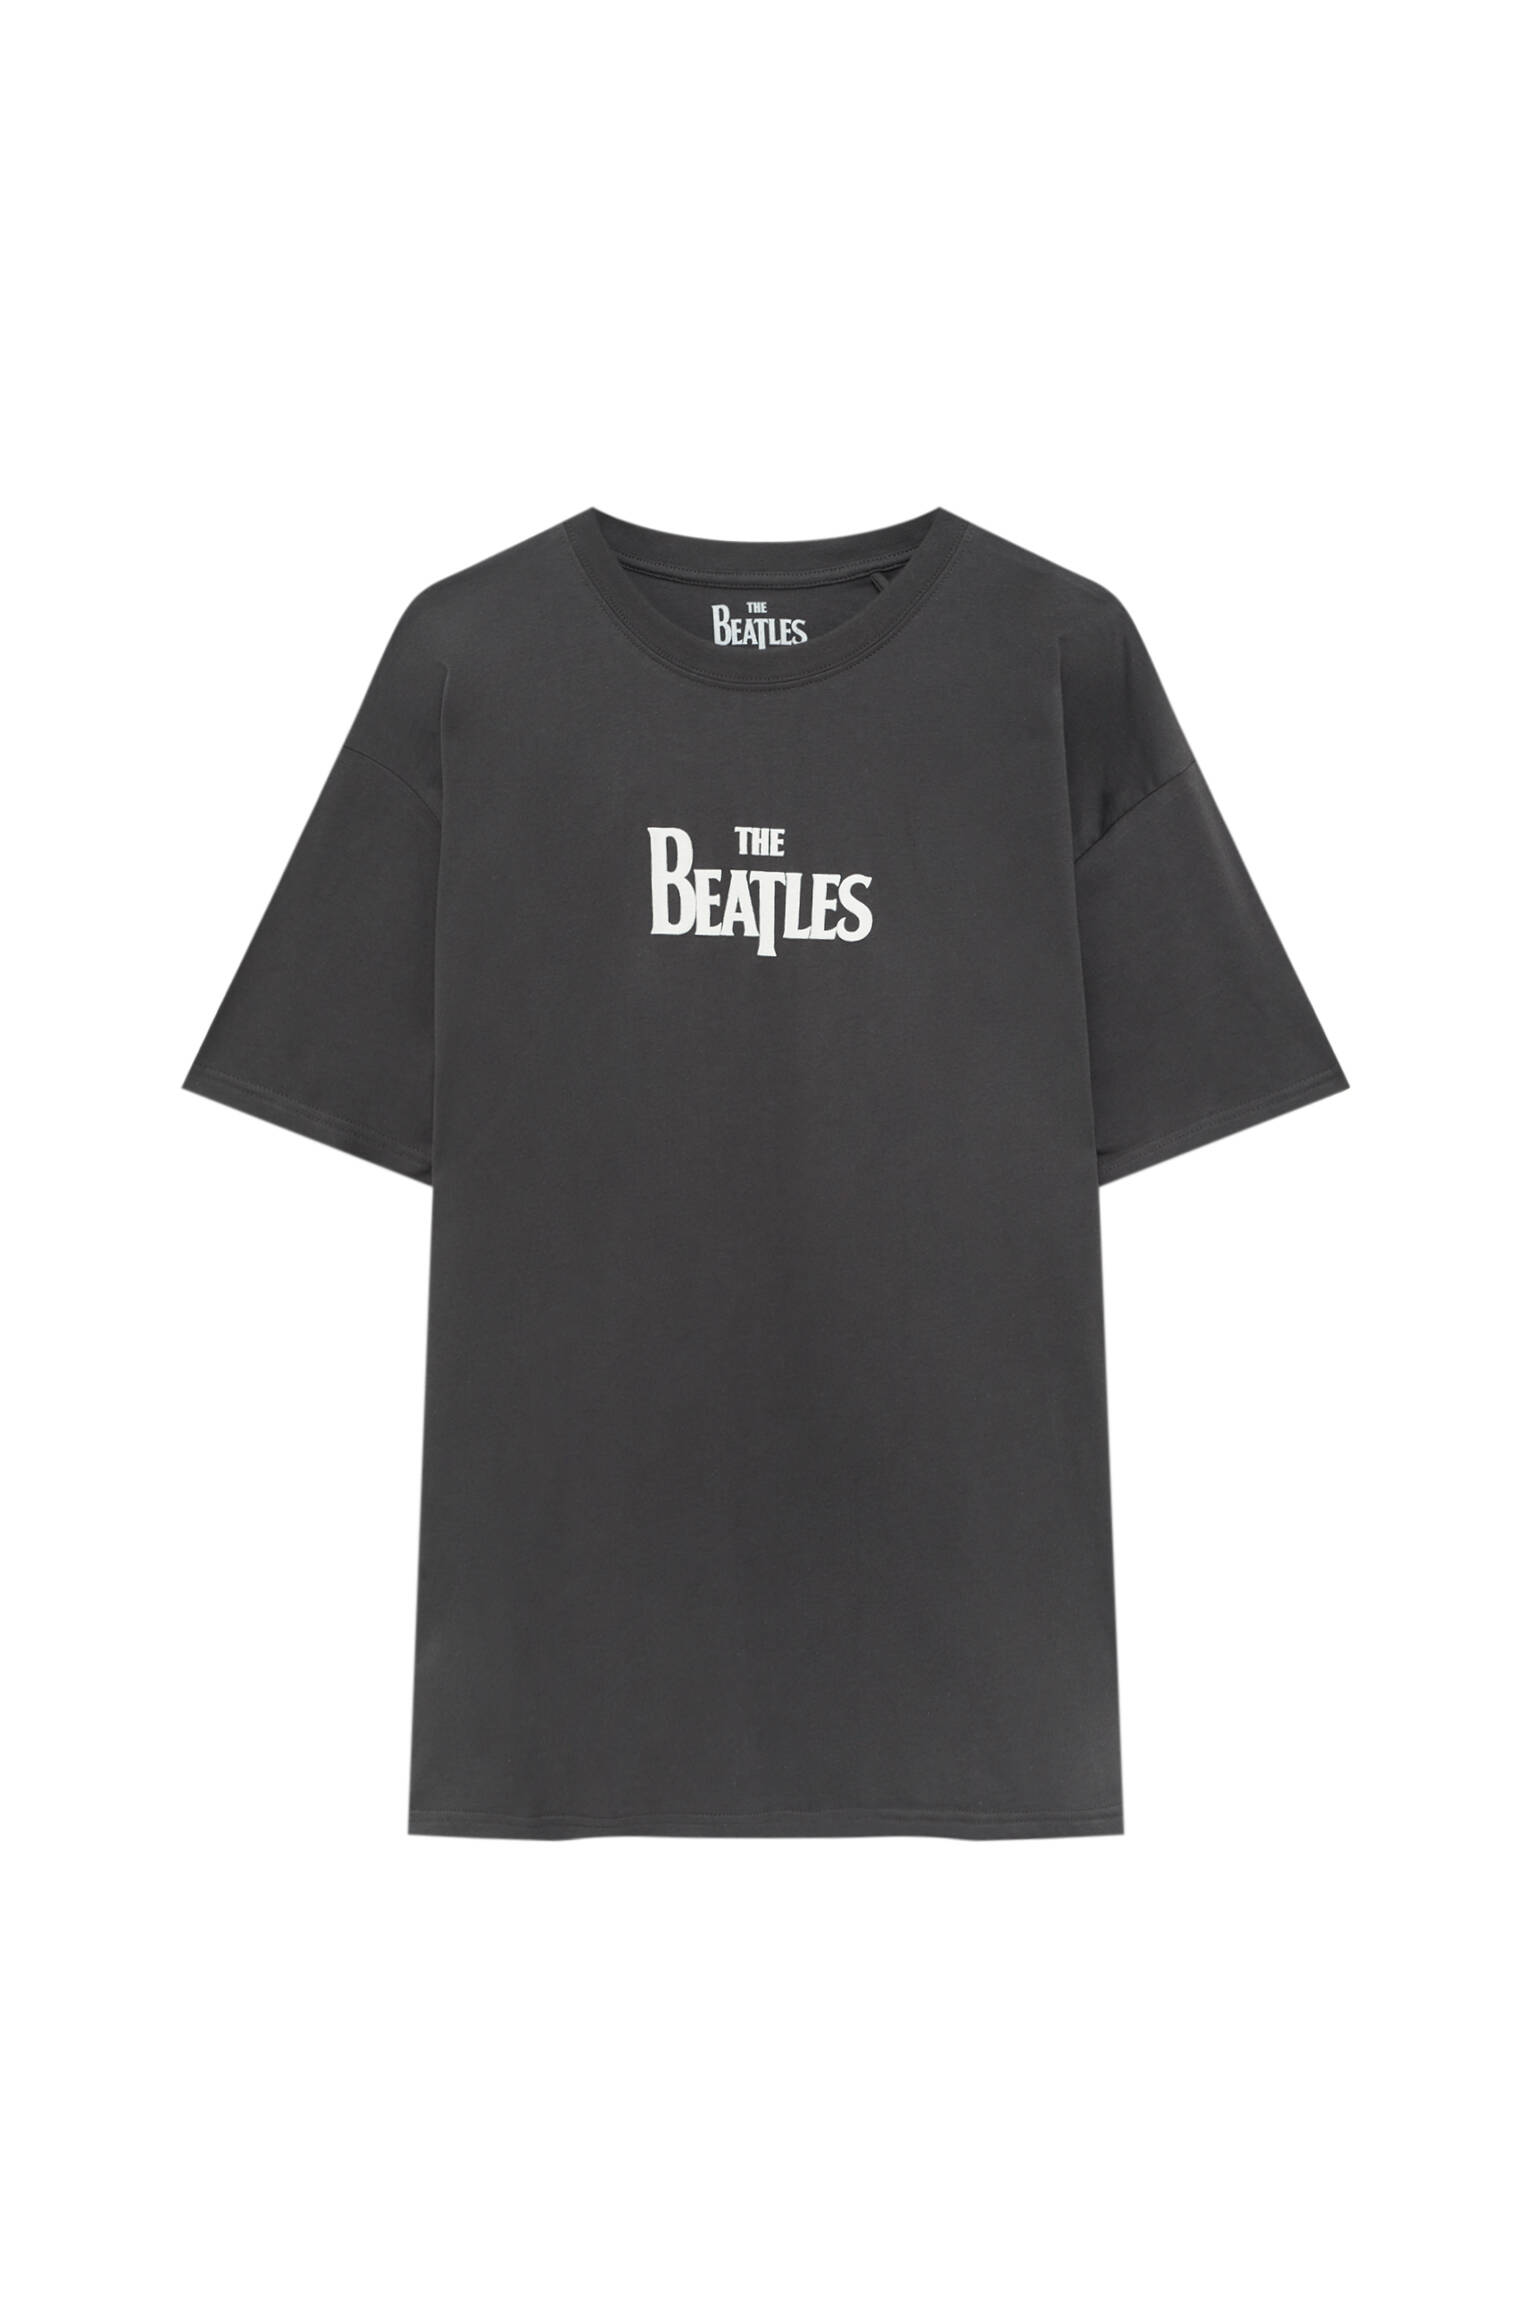 Pull&bear Homme T-shirt Basique à Manches Courtes Et Col Rond, Avec Inscription The Beatles. Gris Anthracite M